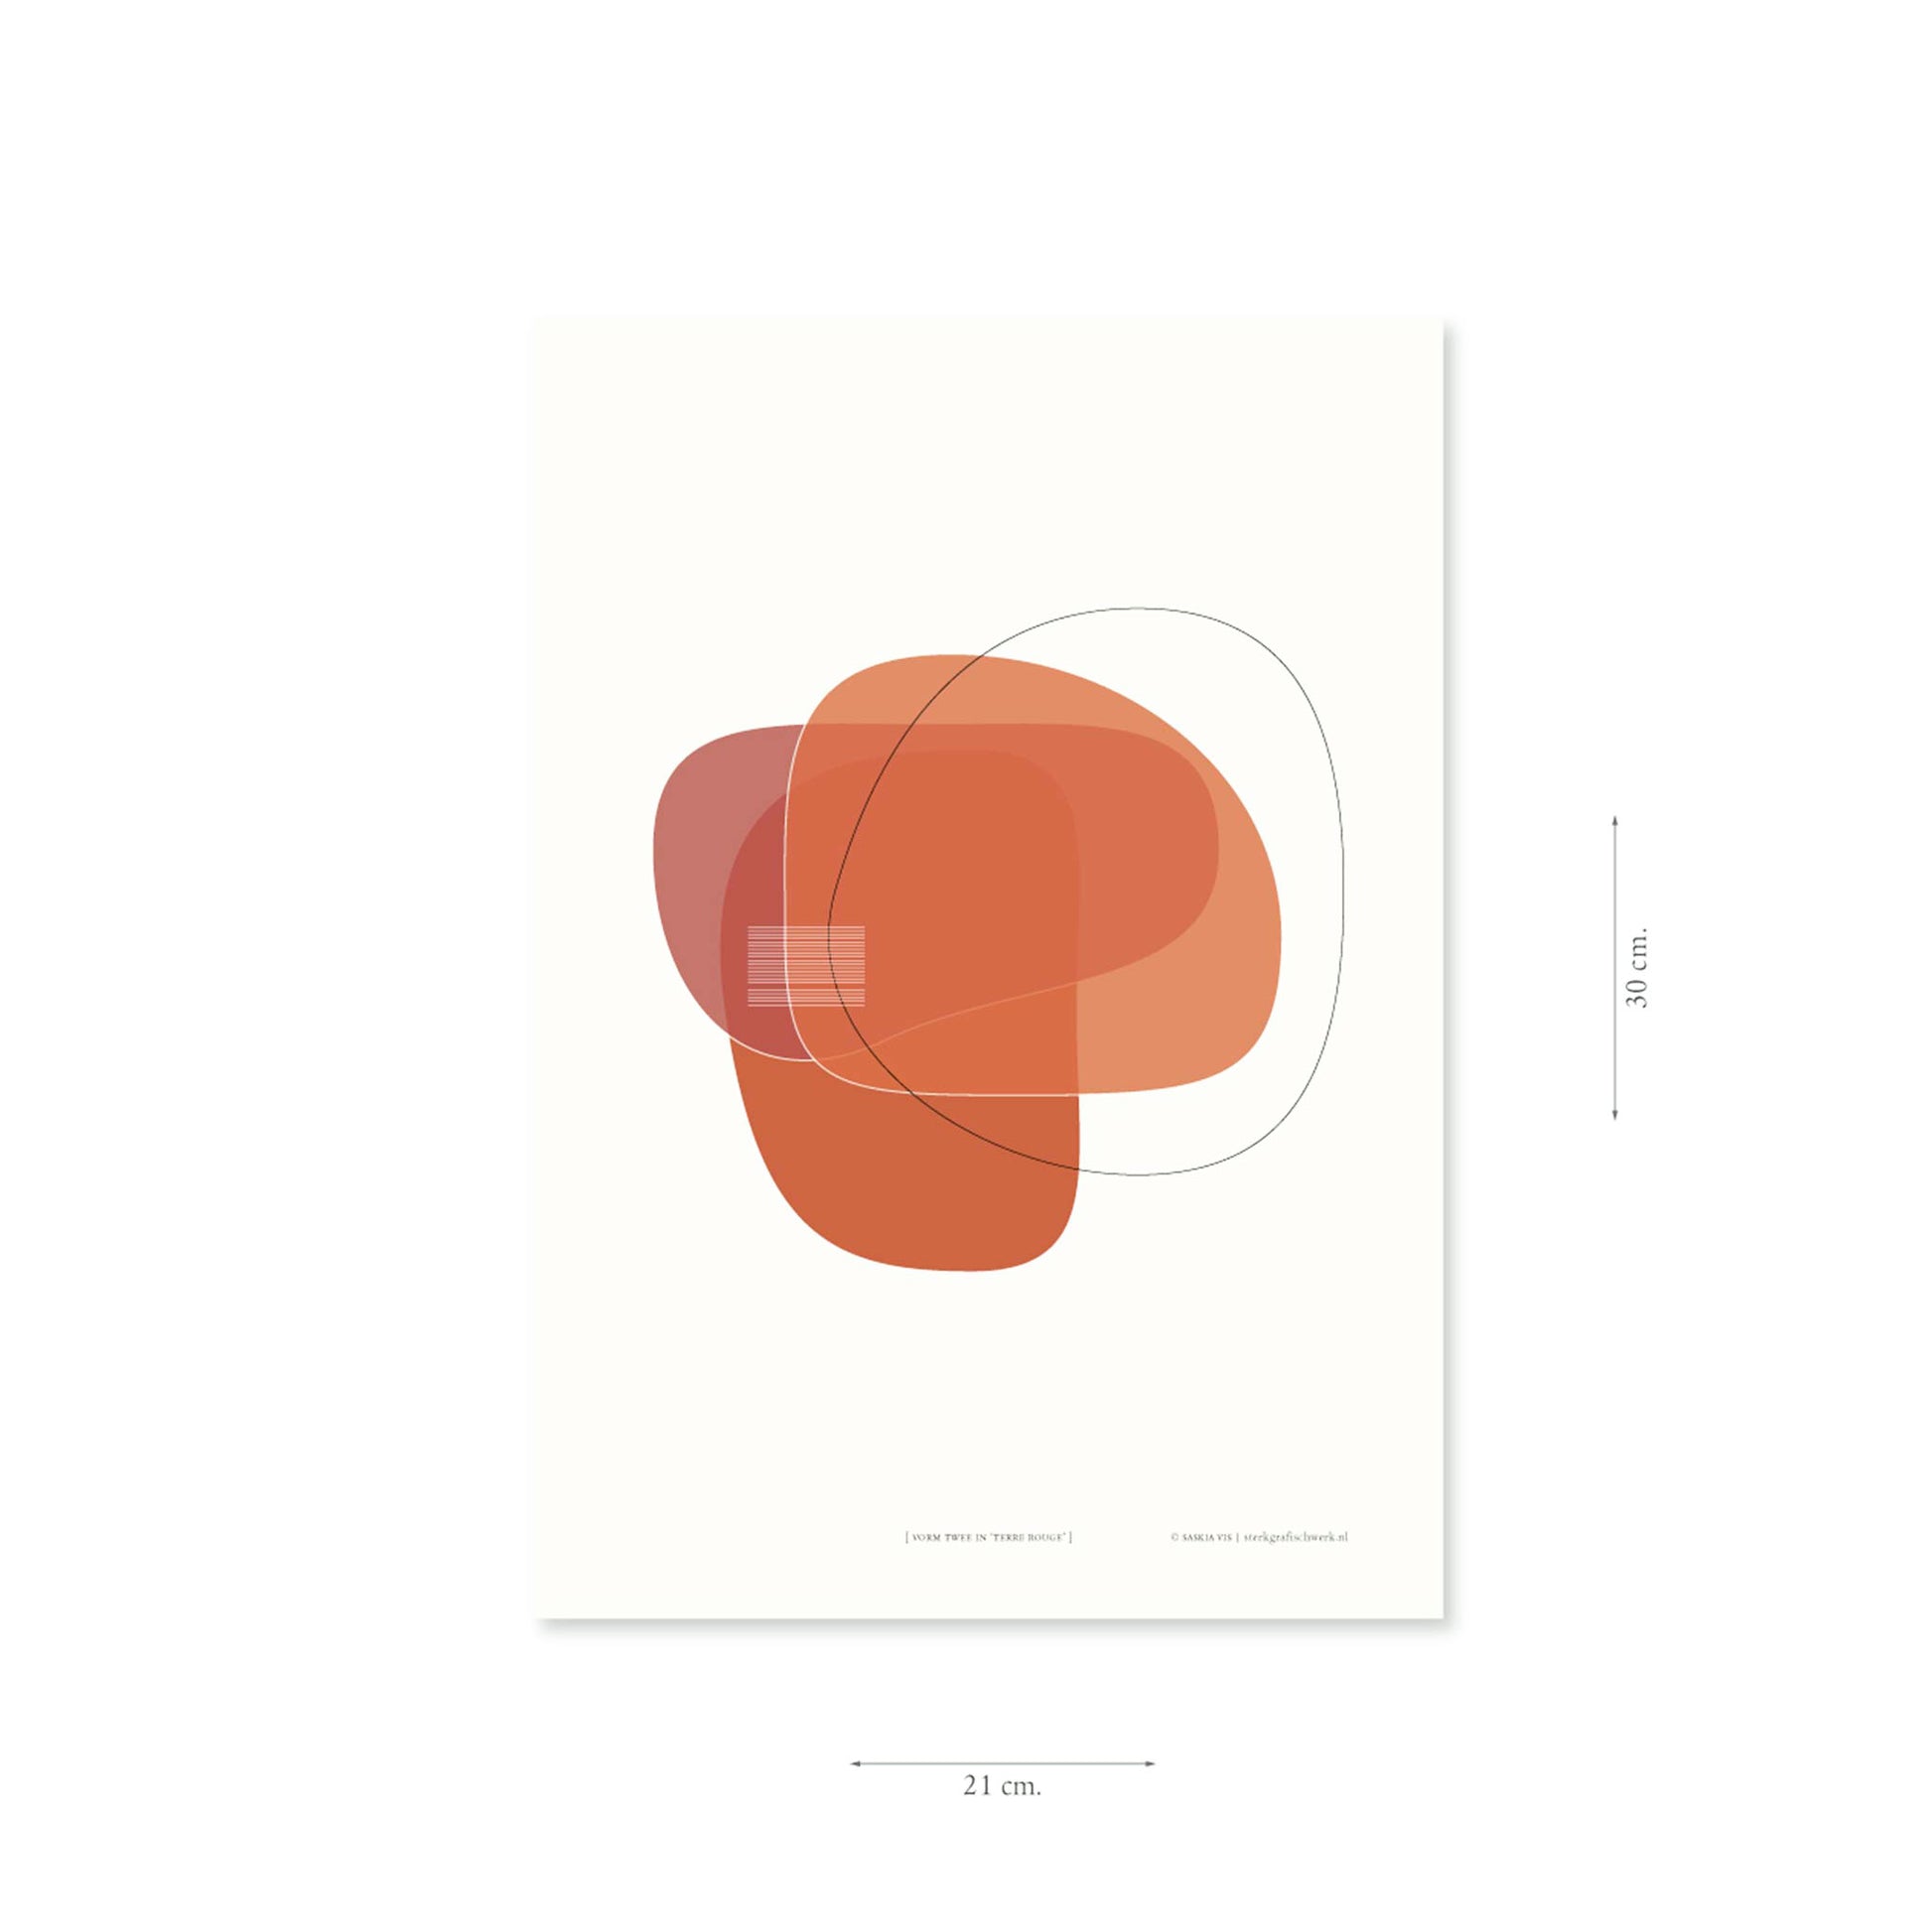 Productafbeelding, poster "vorm twee in terre rouge", met aanduiding van het formaat erop weergegeven 21 x 30 cm